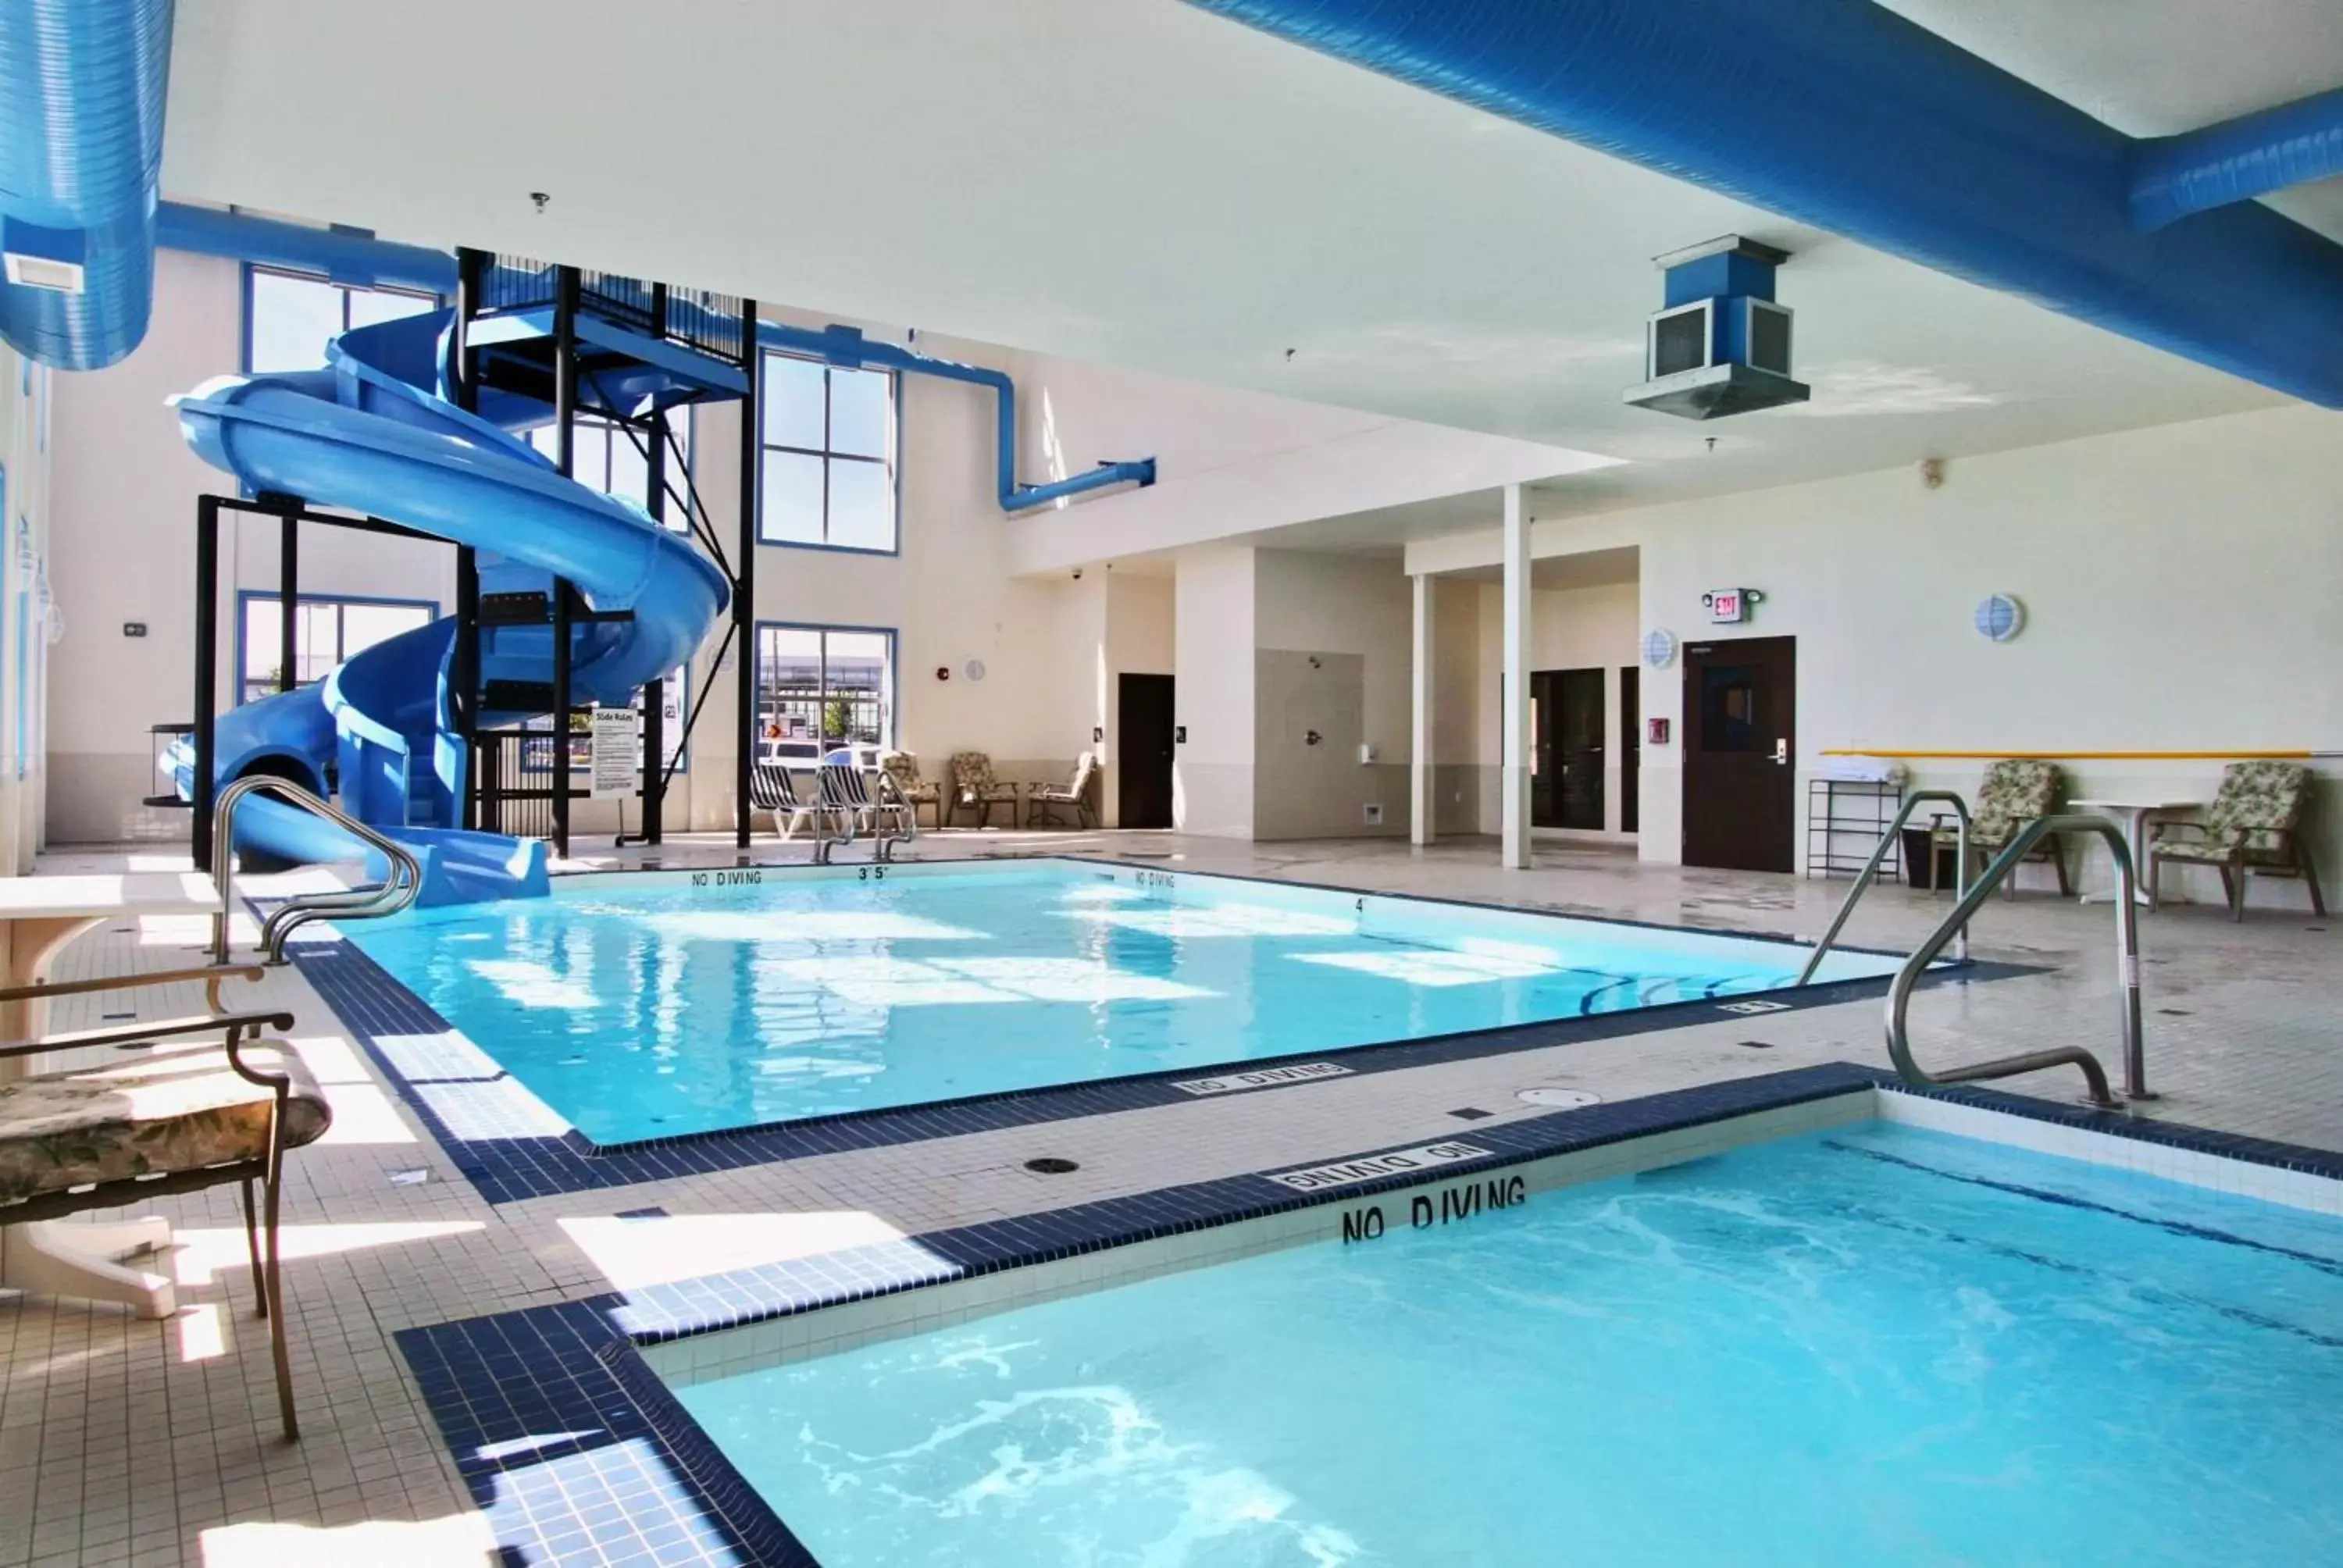 On site, Swimming Pool in Best Western Plus South Edmonton Inn & Suites